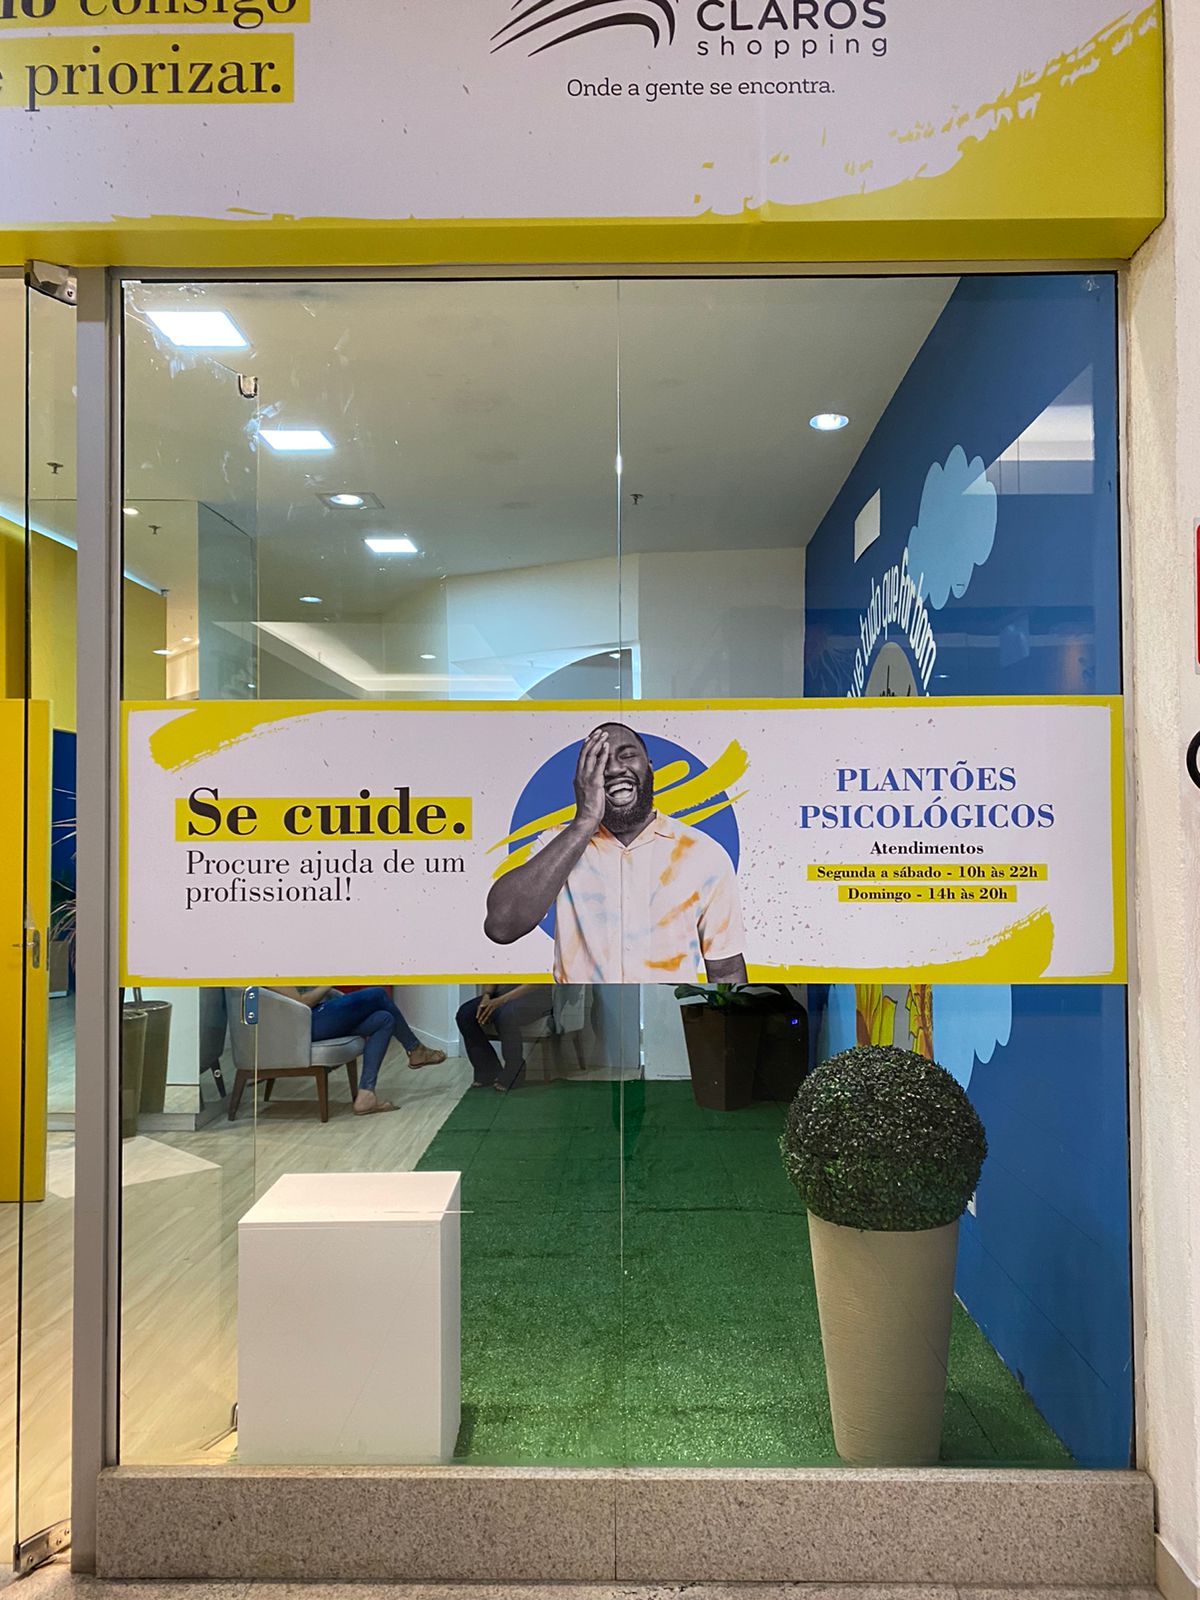 Montes Claros - O Montes Claros Shopping oferece serviço gratuito de escuta e acolhimento em plantões psicológicos destinados à comunidade